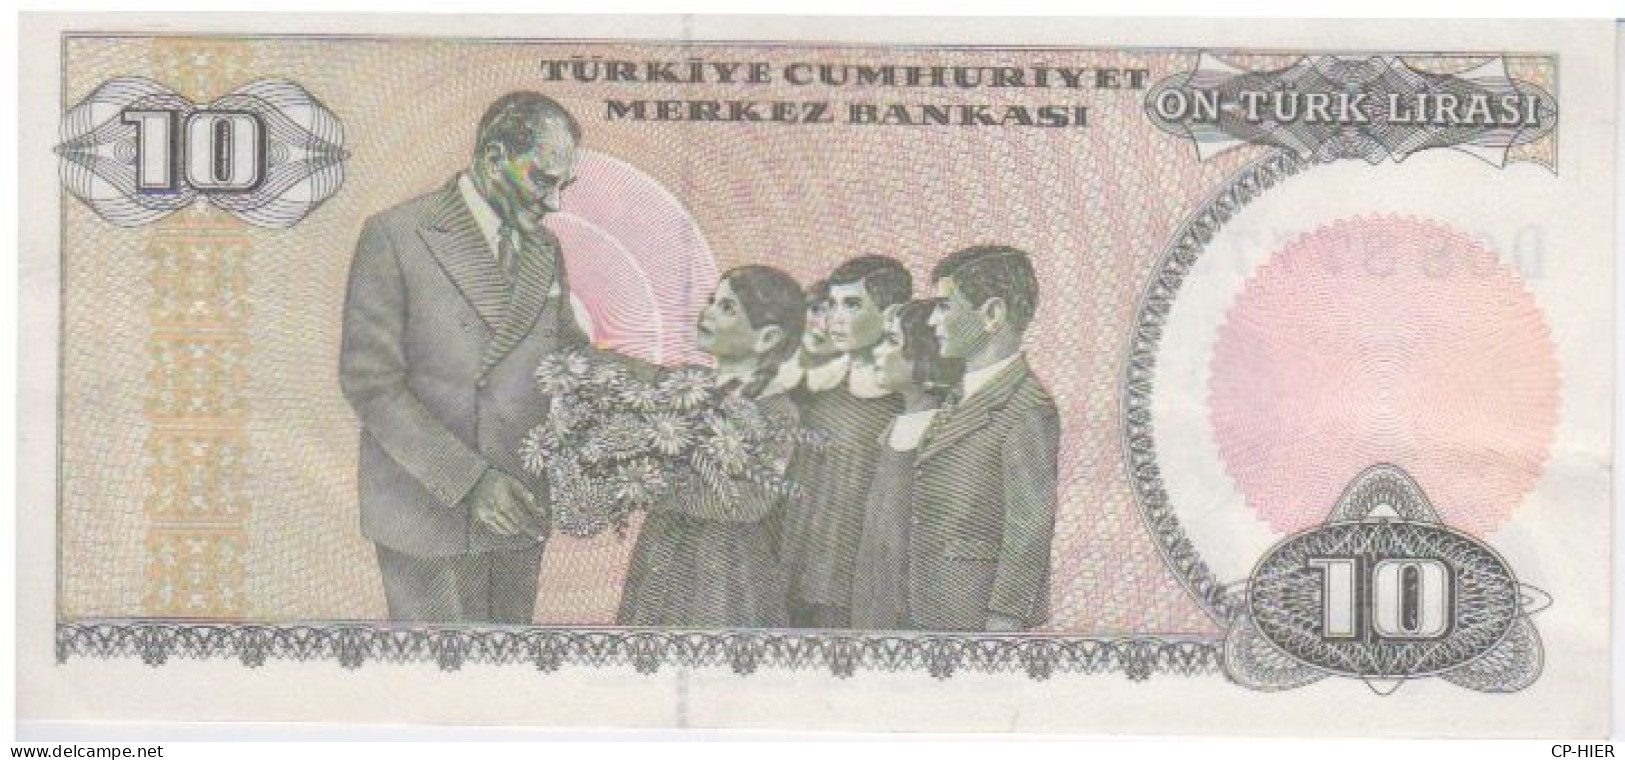 BILLET TURC - TURQUIE - TÜRKIYE -  ON TURK LIRASI 10 - Turkey